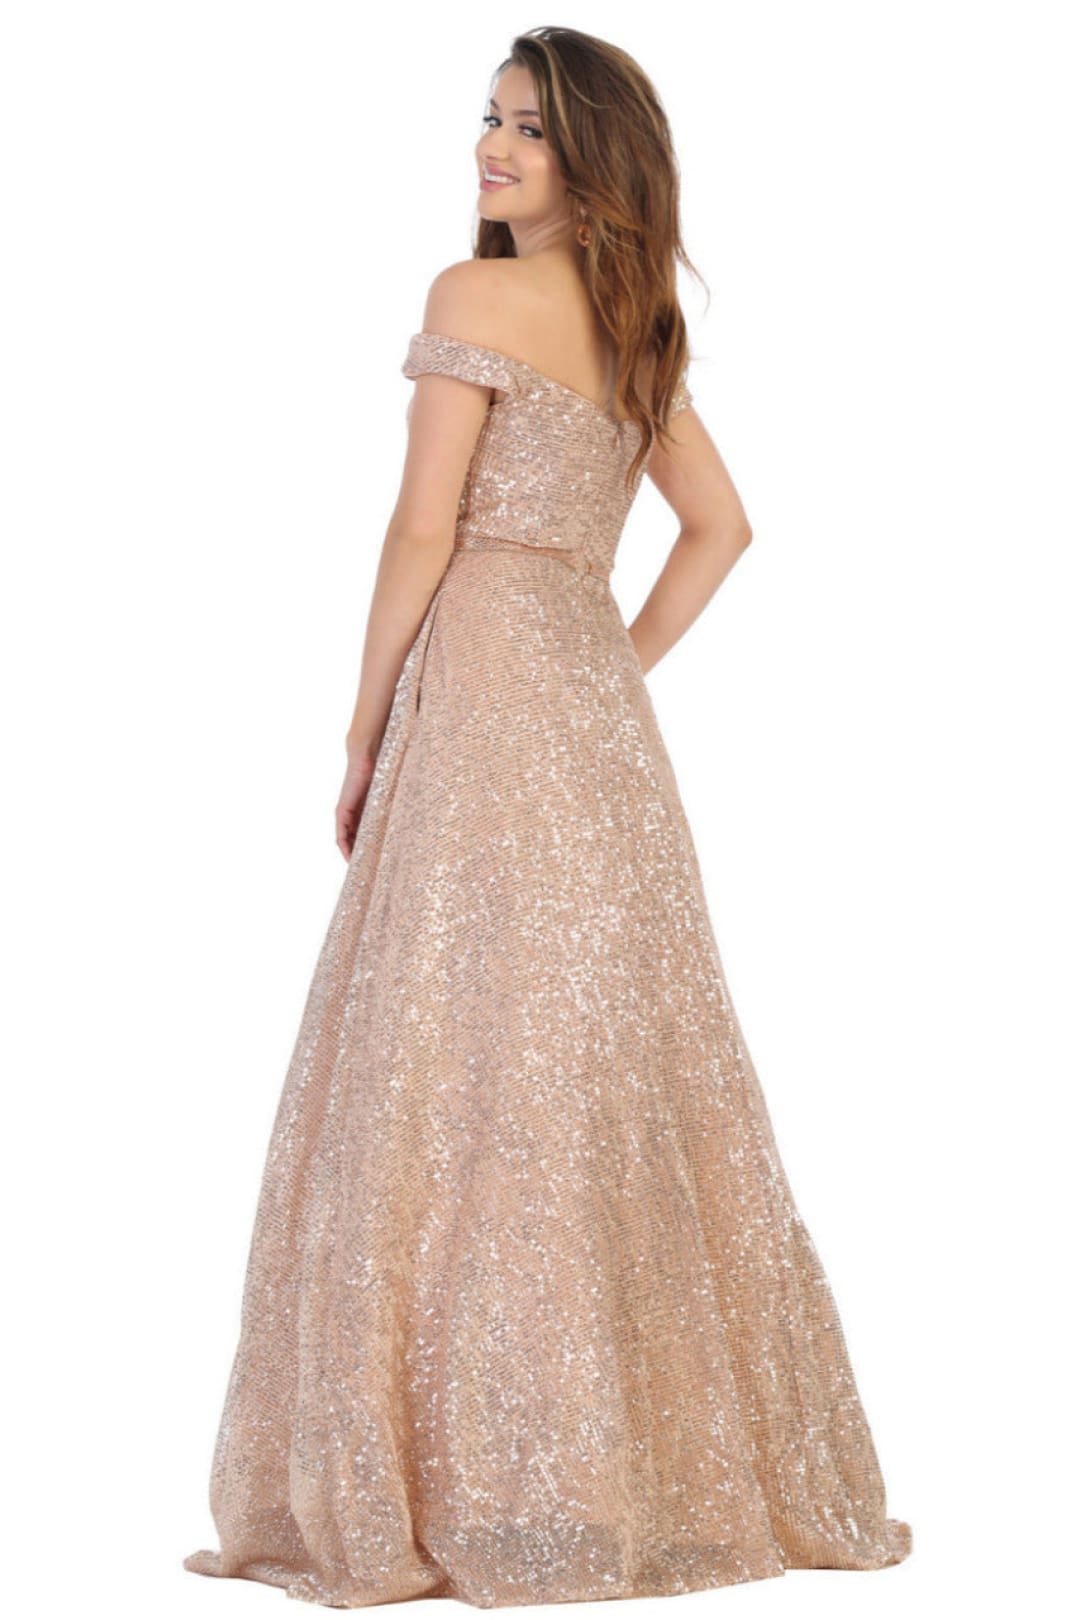 Final Sale! Royal Queen RQ7807 Off Shoulder Sequined Red Carpet Dress - ROSE GOLD / 6 - Dress